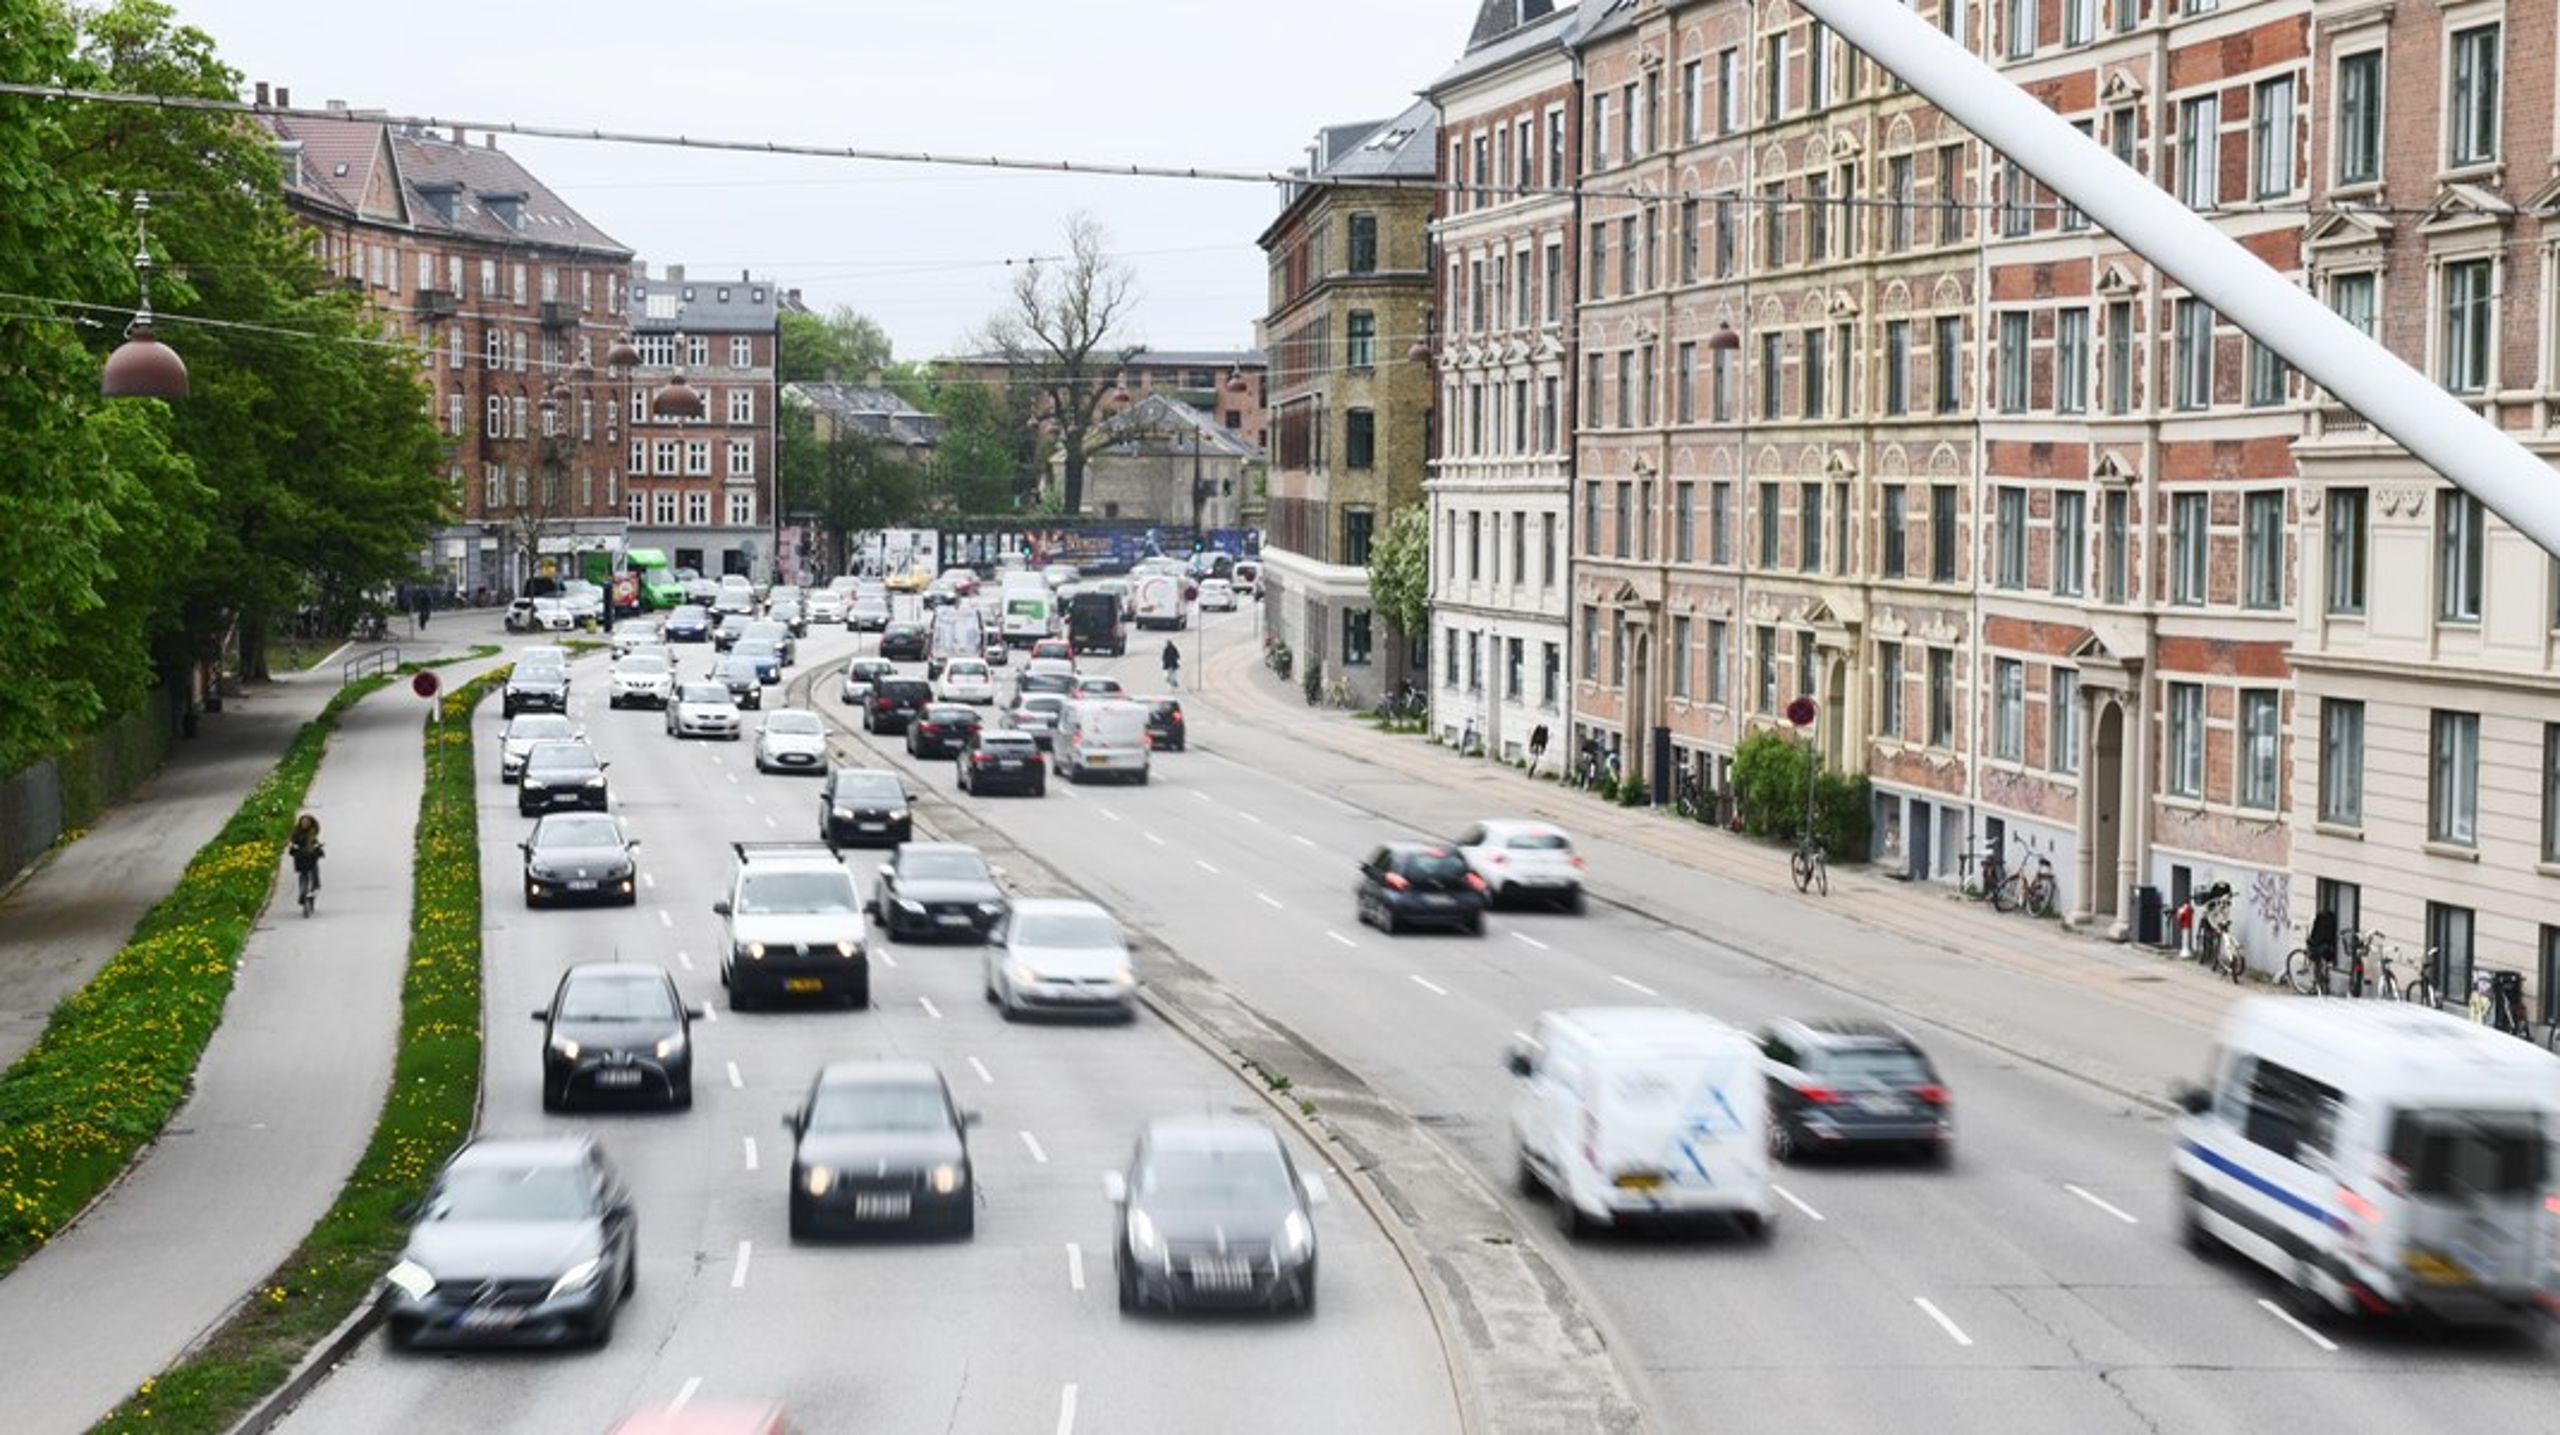 Københavnere, som skal rådgive politikerne om lokalpolitik ønsker færre biler i byen. Men Københavns kommune har netop vedtaget et budget som afsætter et tocifret millionbeløb til erstatningsparkeringspladser. Det giver god mening, siger overborgmester Sophie Hæstorp Andersen (S).